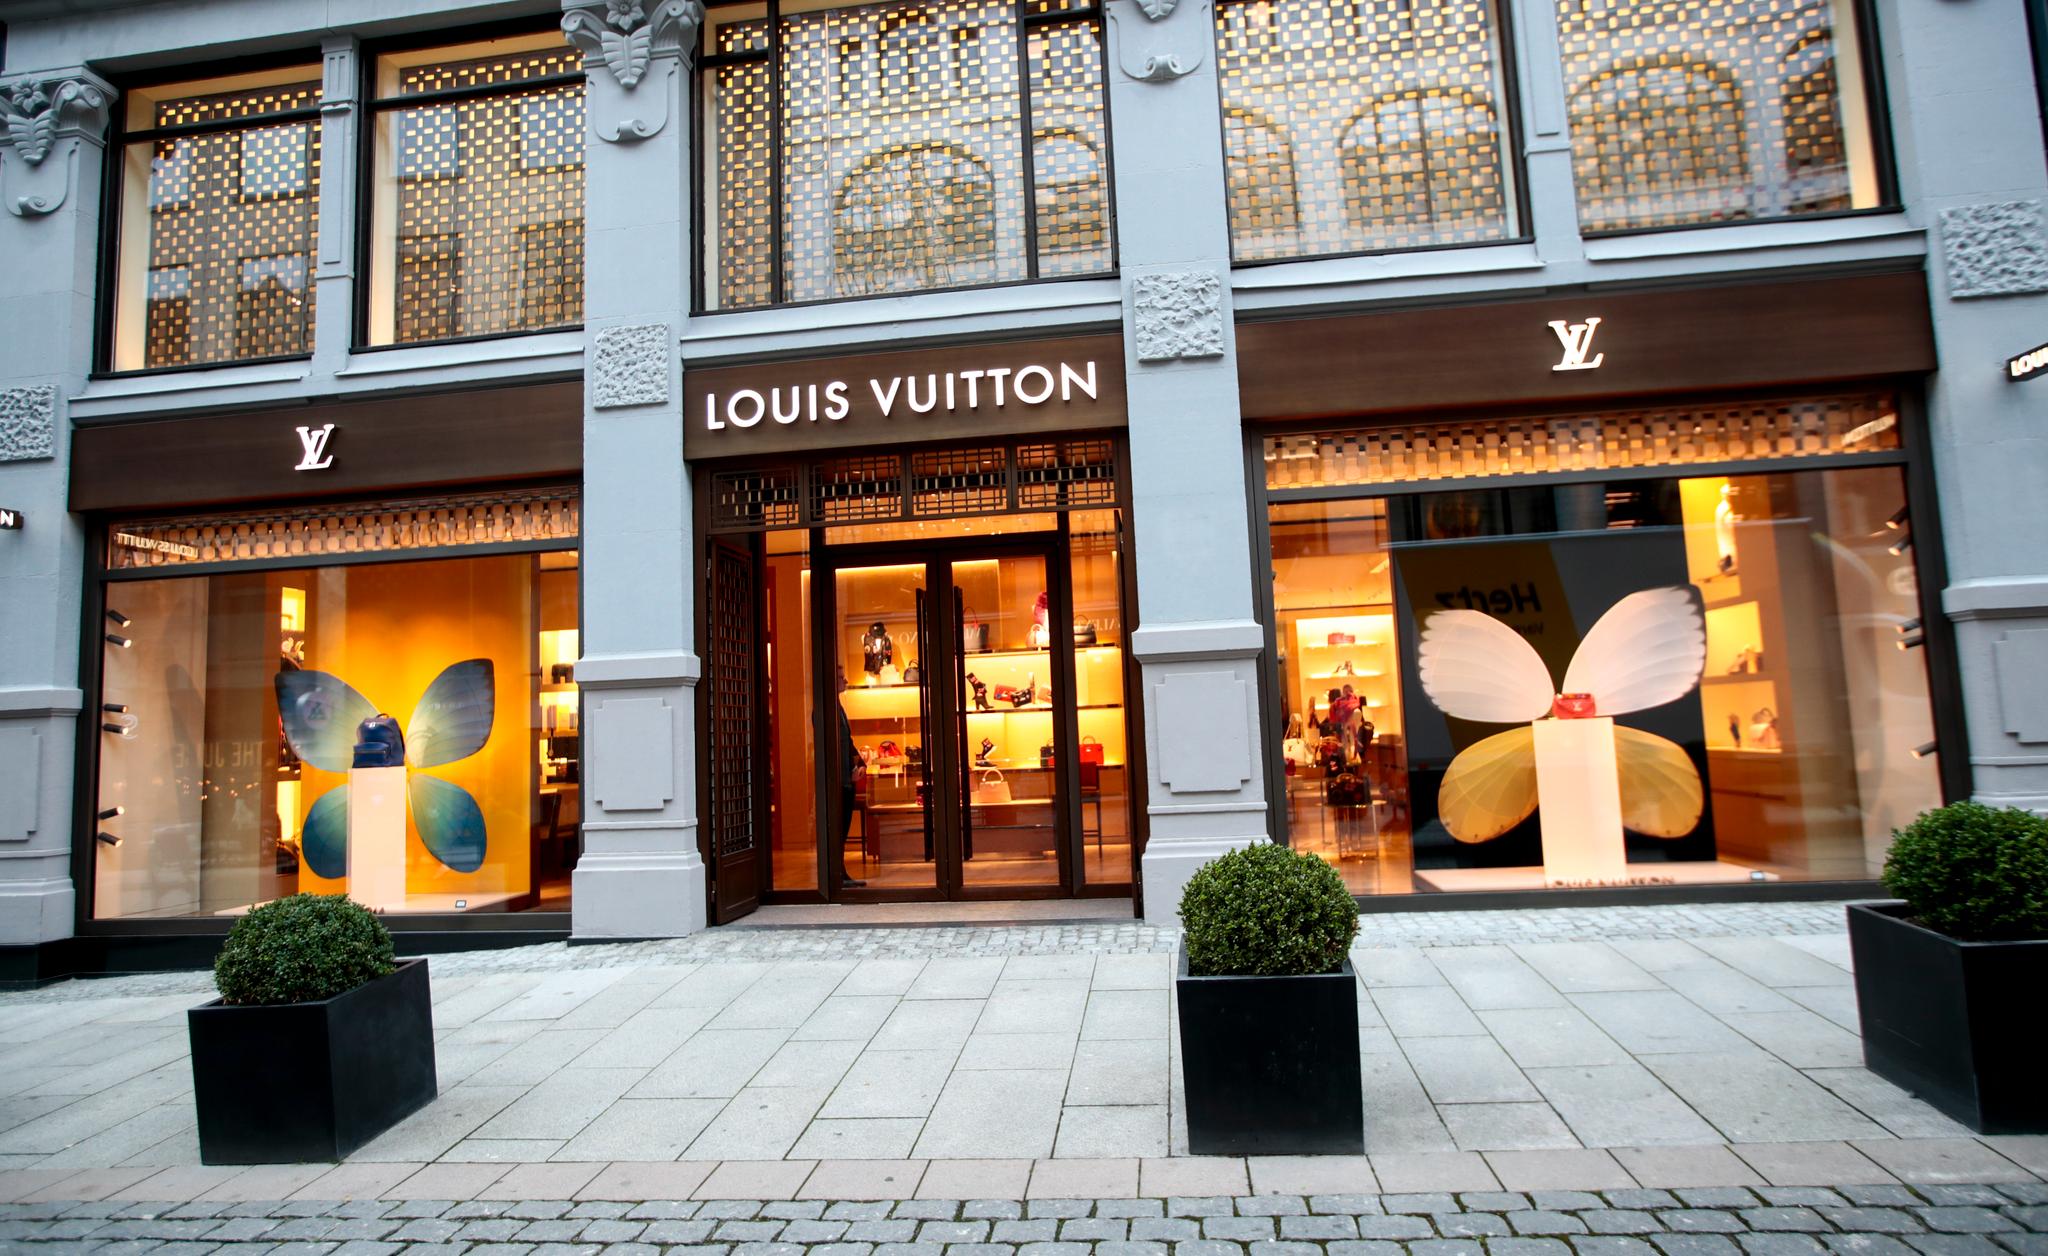 grundigt Blinke boykot Aftenposten mener: En lærepenge i støtten til Louis Vuitton